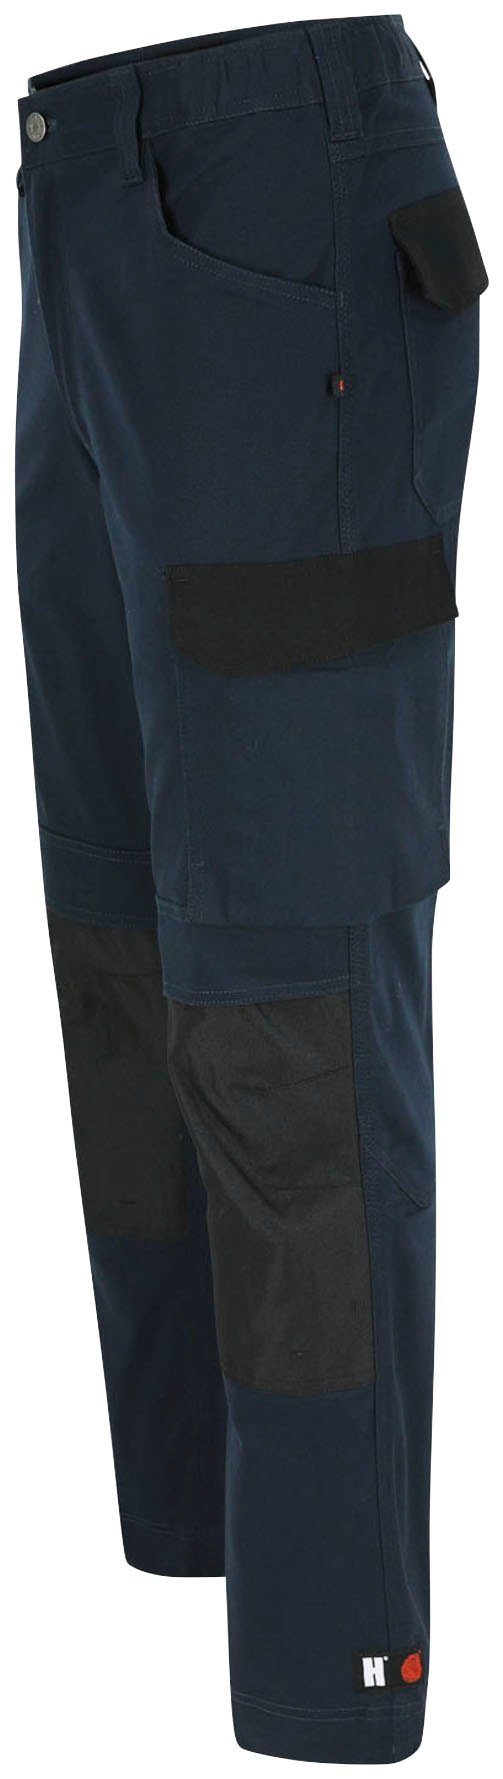 Herock Arbeitshose DERO Slim Fit wasserabweisend 2-Wege-Stretch, marine Multi-Pocket, Passform